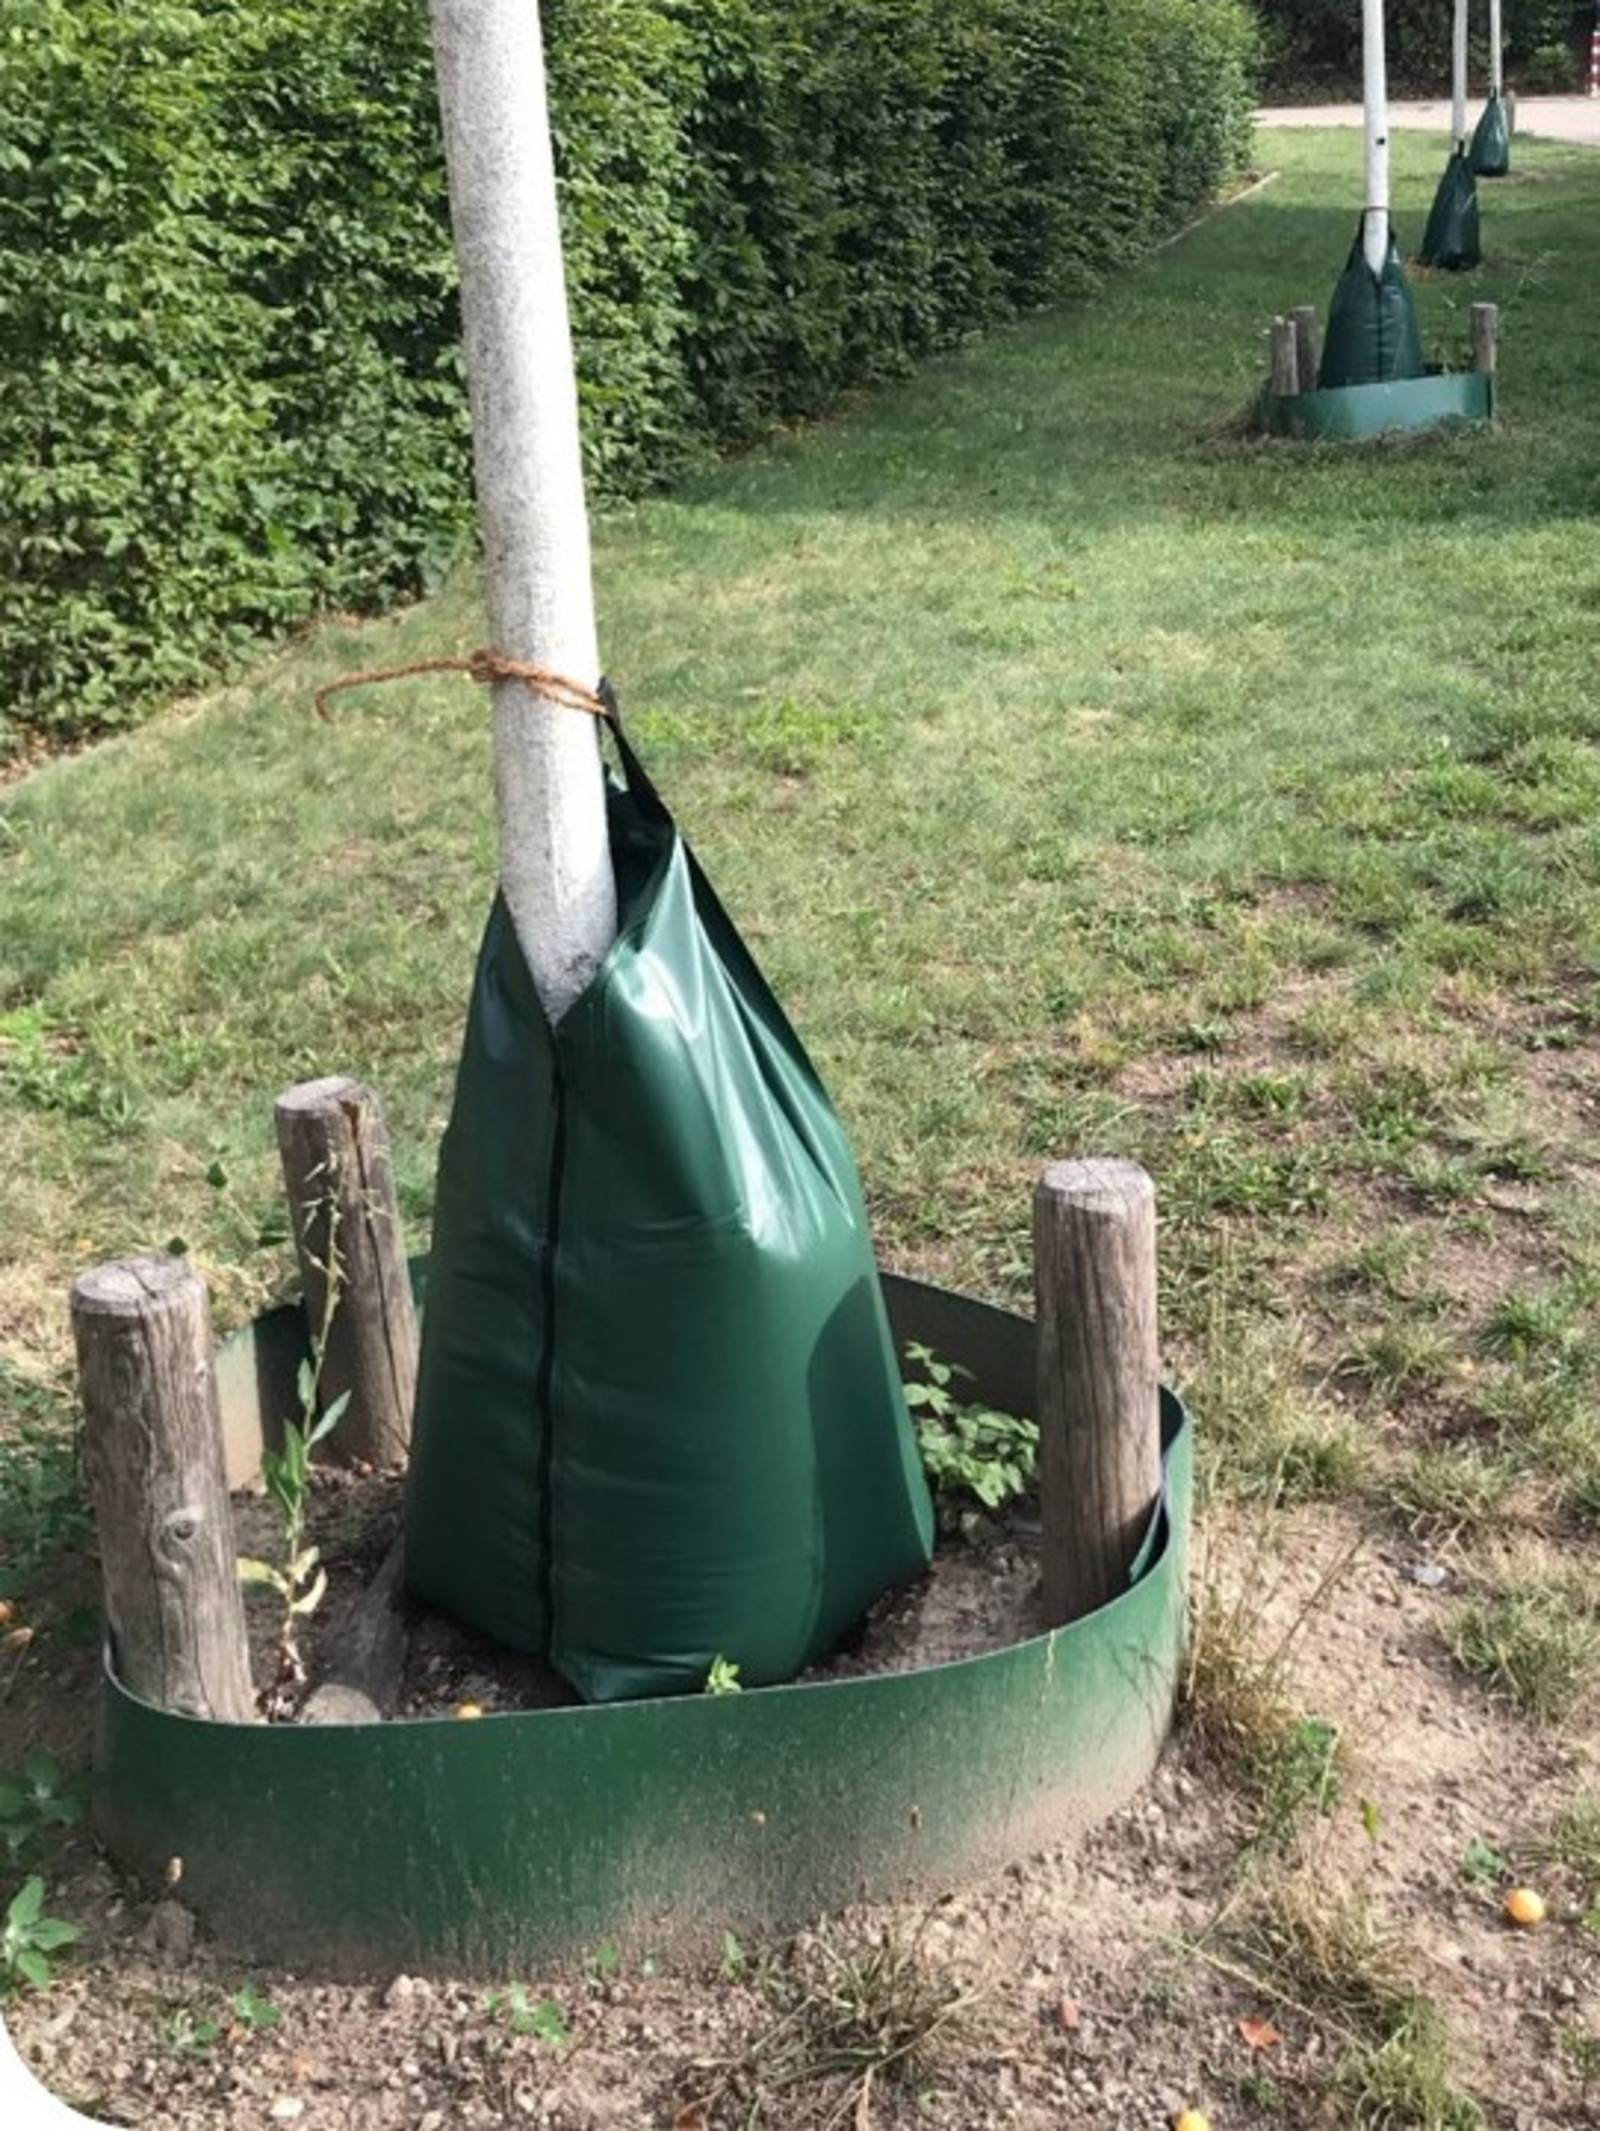 Grüner Kunststoffsack, der um einen Baumstamm gebunden ist und ein grüner Kunststoffring, der mittels dreier Holzpflöcke am Boden um den Stamm gespannt ist, um das Abfliessen des Wassers zu verhindern.